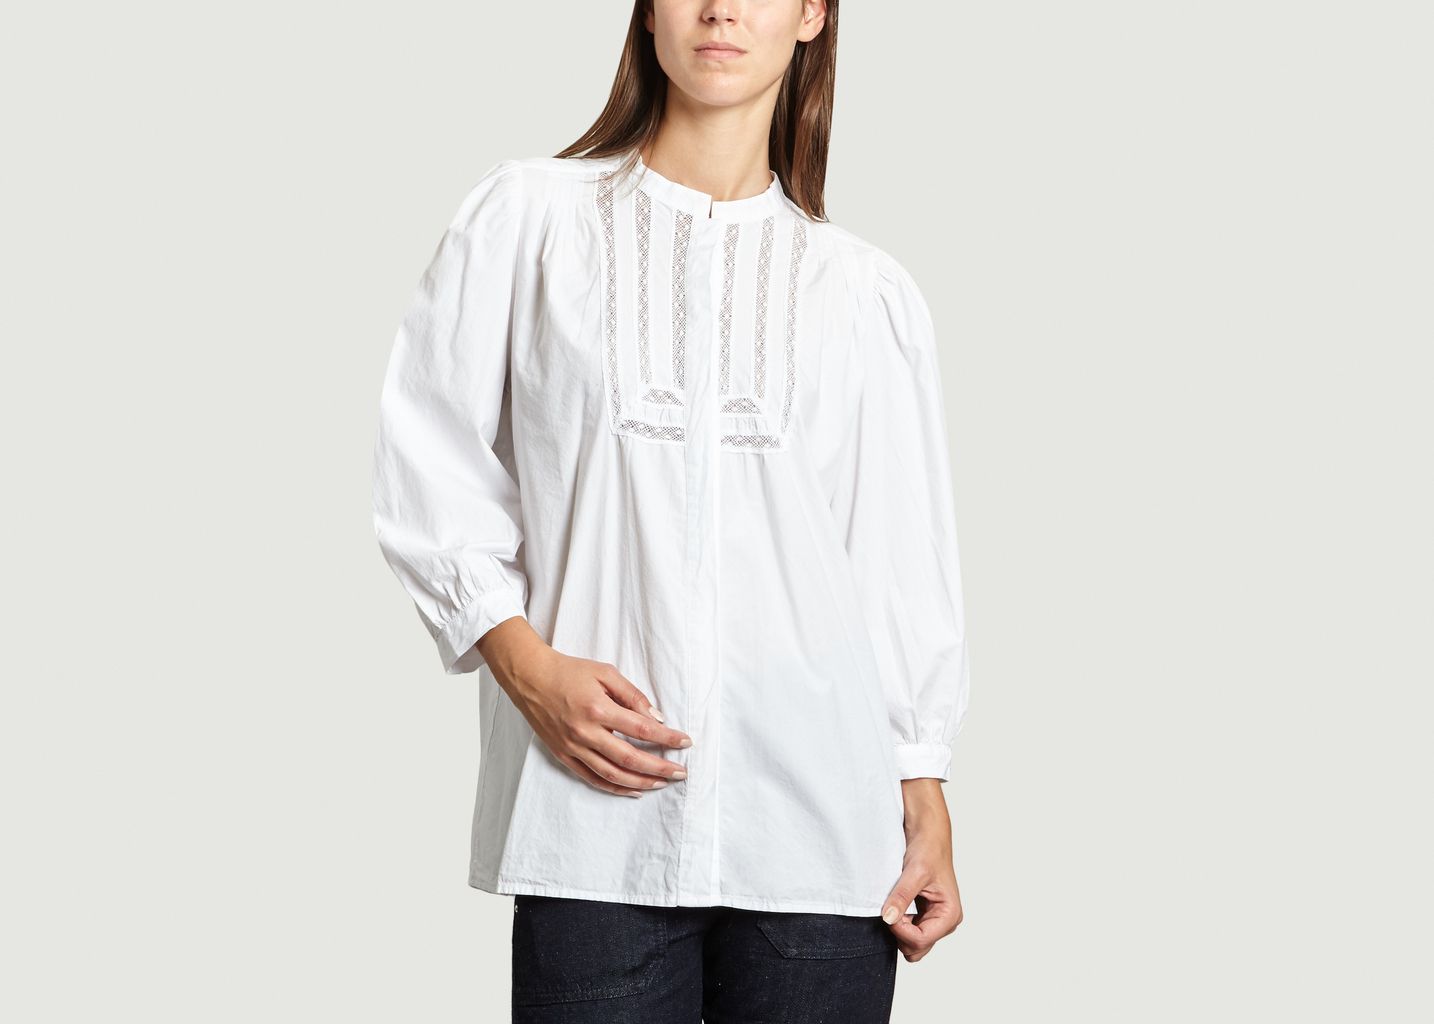 Chloé Shirt - NC.2